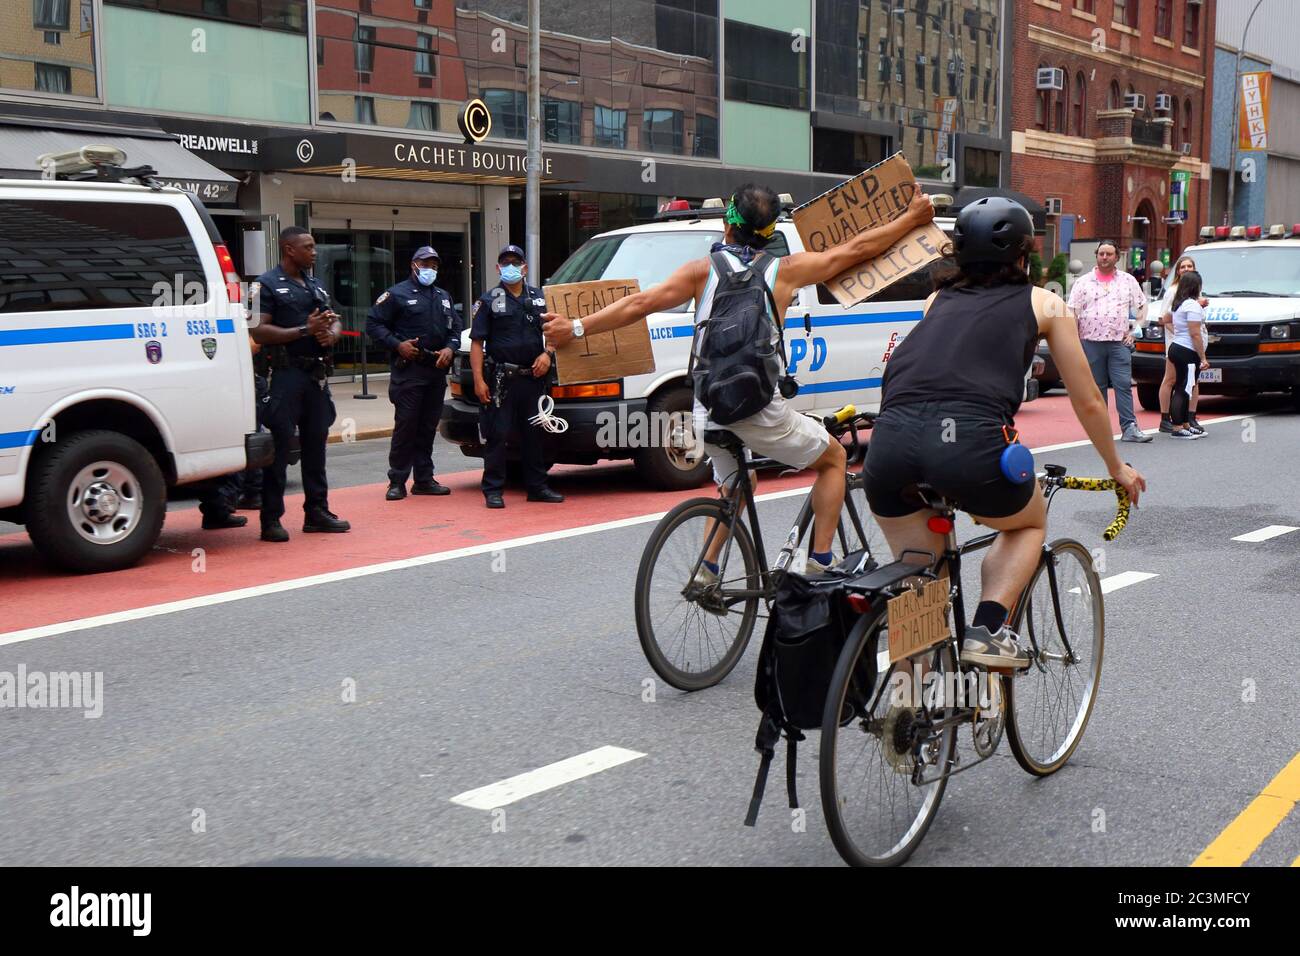 New York, NY., 20 juin 2020. Une personne sur un vélo porte deux panneaux à la police, « End Qualified Immunity for police », et « légaliser ». La manifestation à vélo était une course de solidarité pour les Black Lives Matter qui réclalait la justice dans une série récente de meurtres de la police américaine : George Floyd, Breonna Taylor et d'innombrables autres. La balade en vélo a été organisée par le collectif appelé Street Riders NYC. Plusieurs milliers de personnes ont participé à la manifestation itinérante qui a voyagé de Times Square, Harlem et Battery Park. 20 juin 2020 Banque D'Images